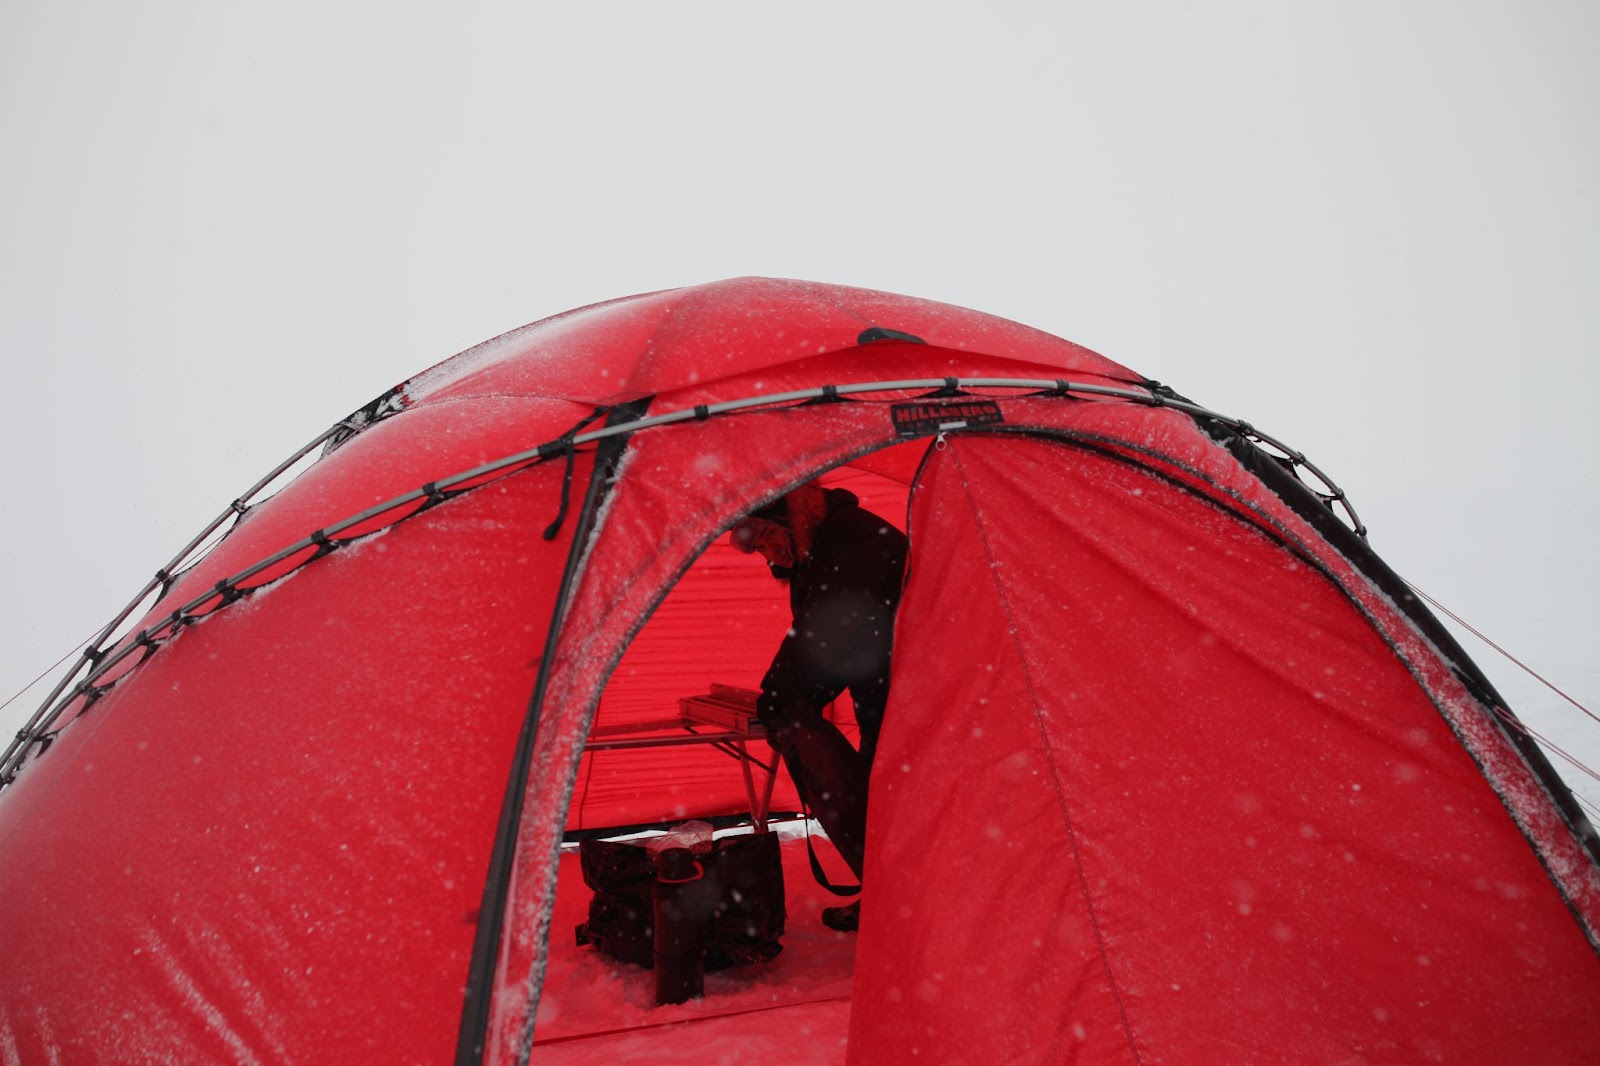 Палатки неплохо сохраняют тепло - в них комфортно переодеваться, спать и проводить время, даже если снаружи холодно.